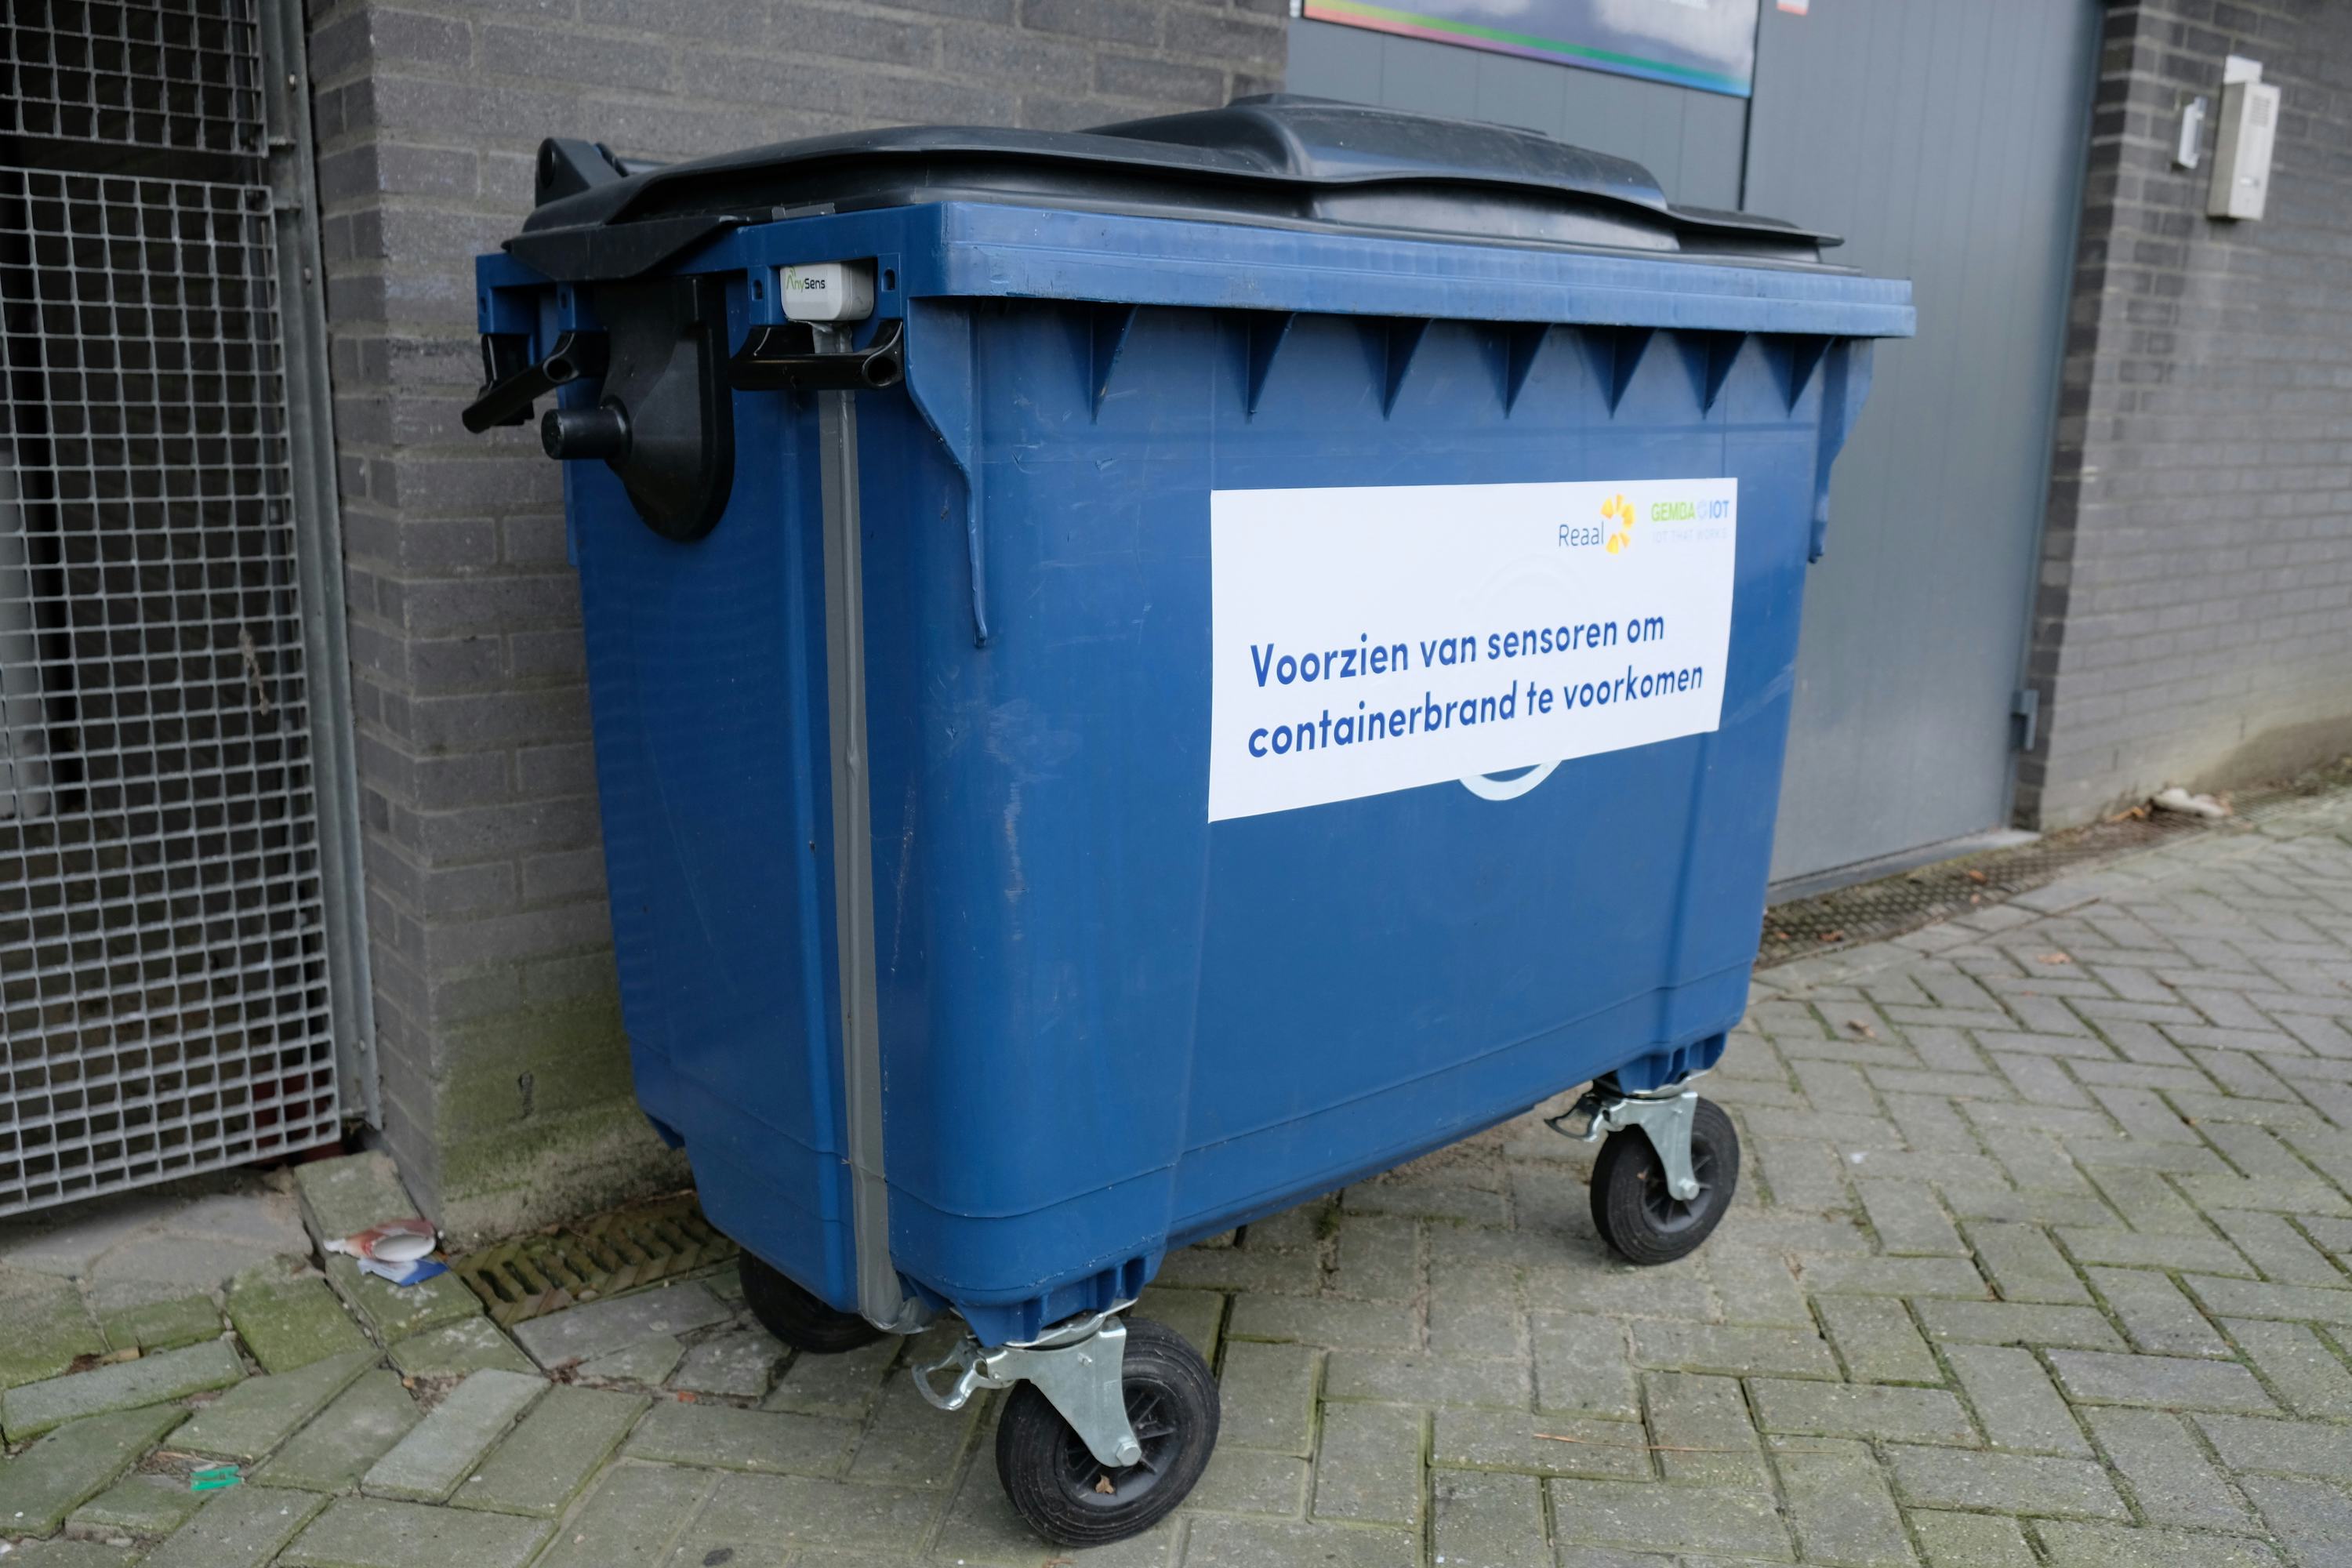 Innovatie: Reaal plaatst sensors in afvalcontainers om branden tegen te gaan